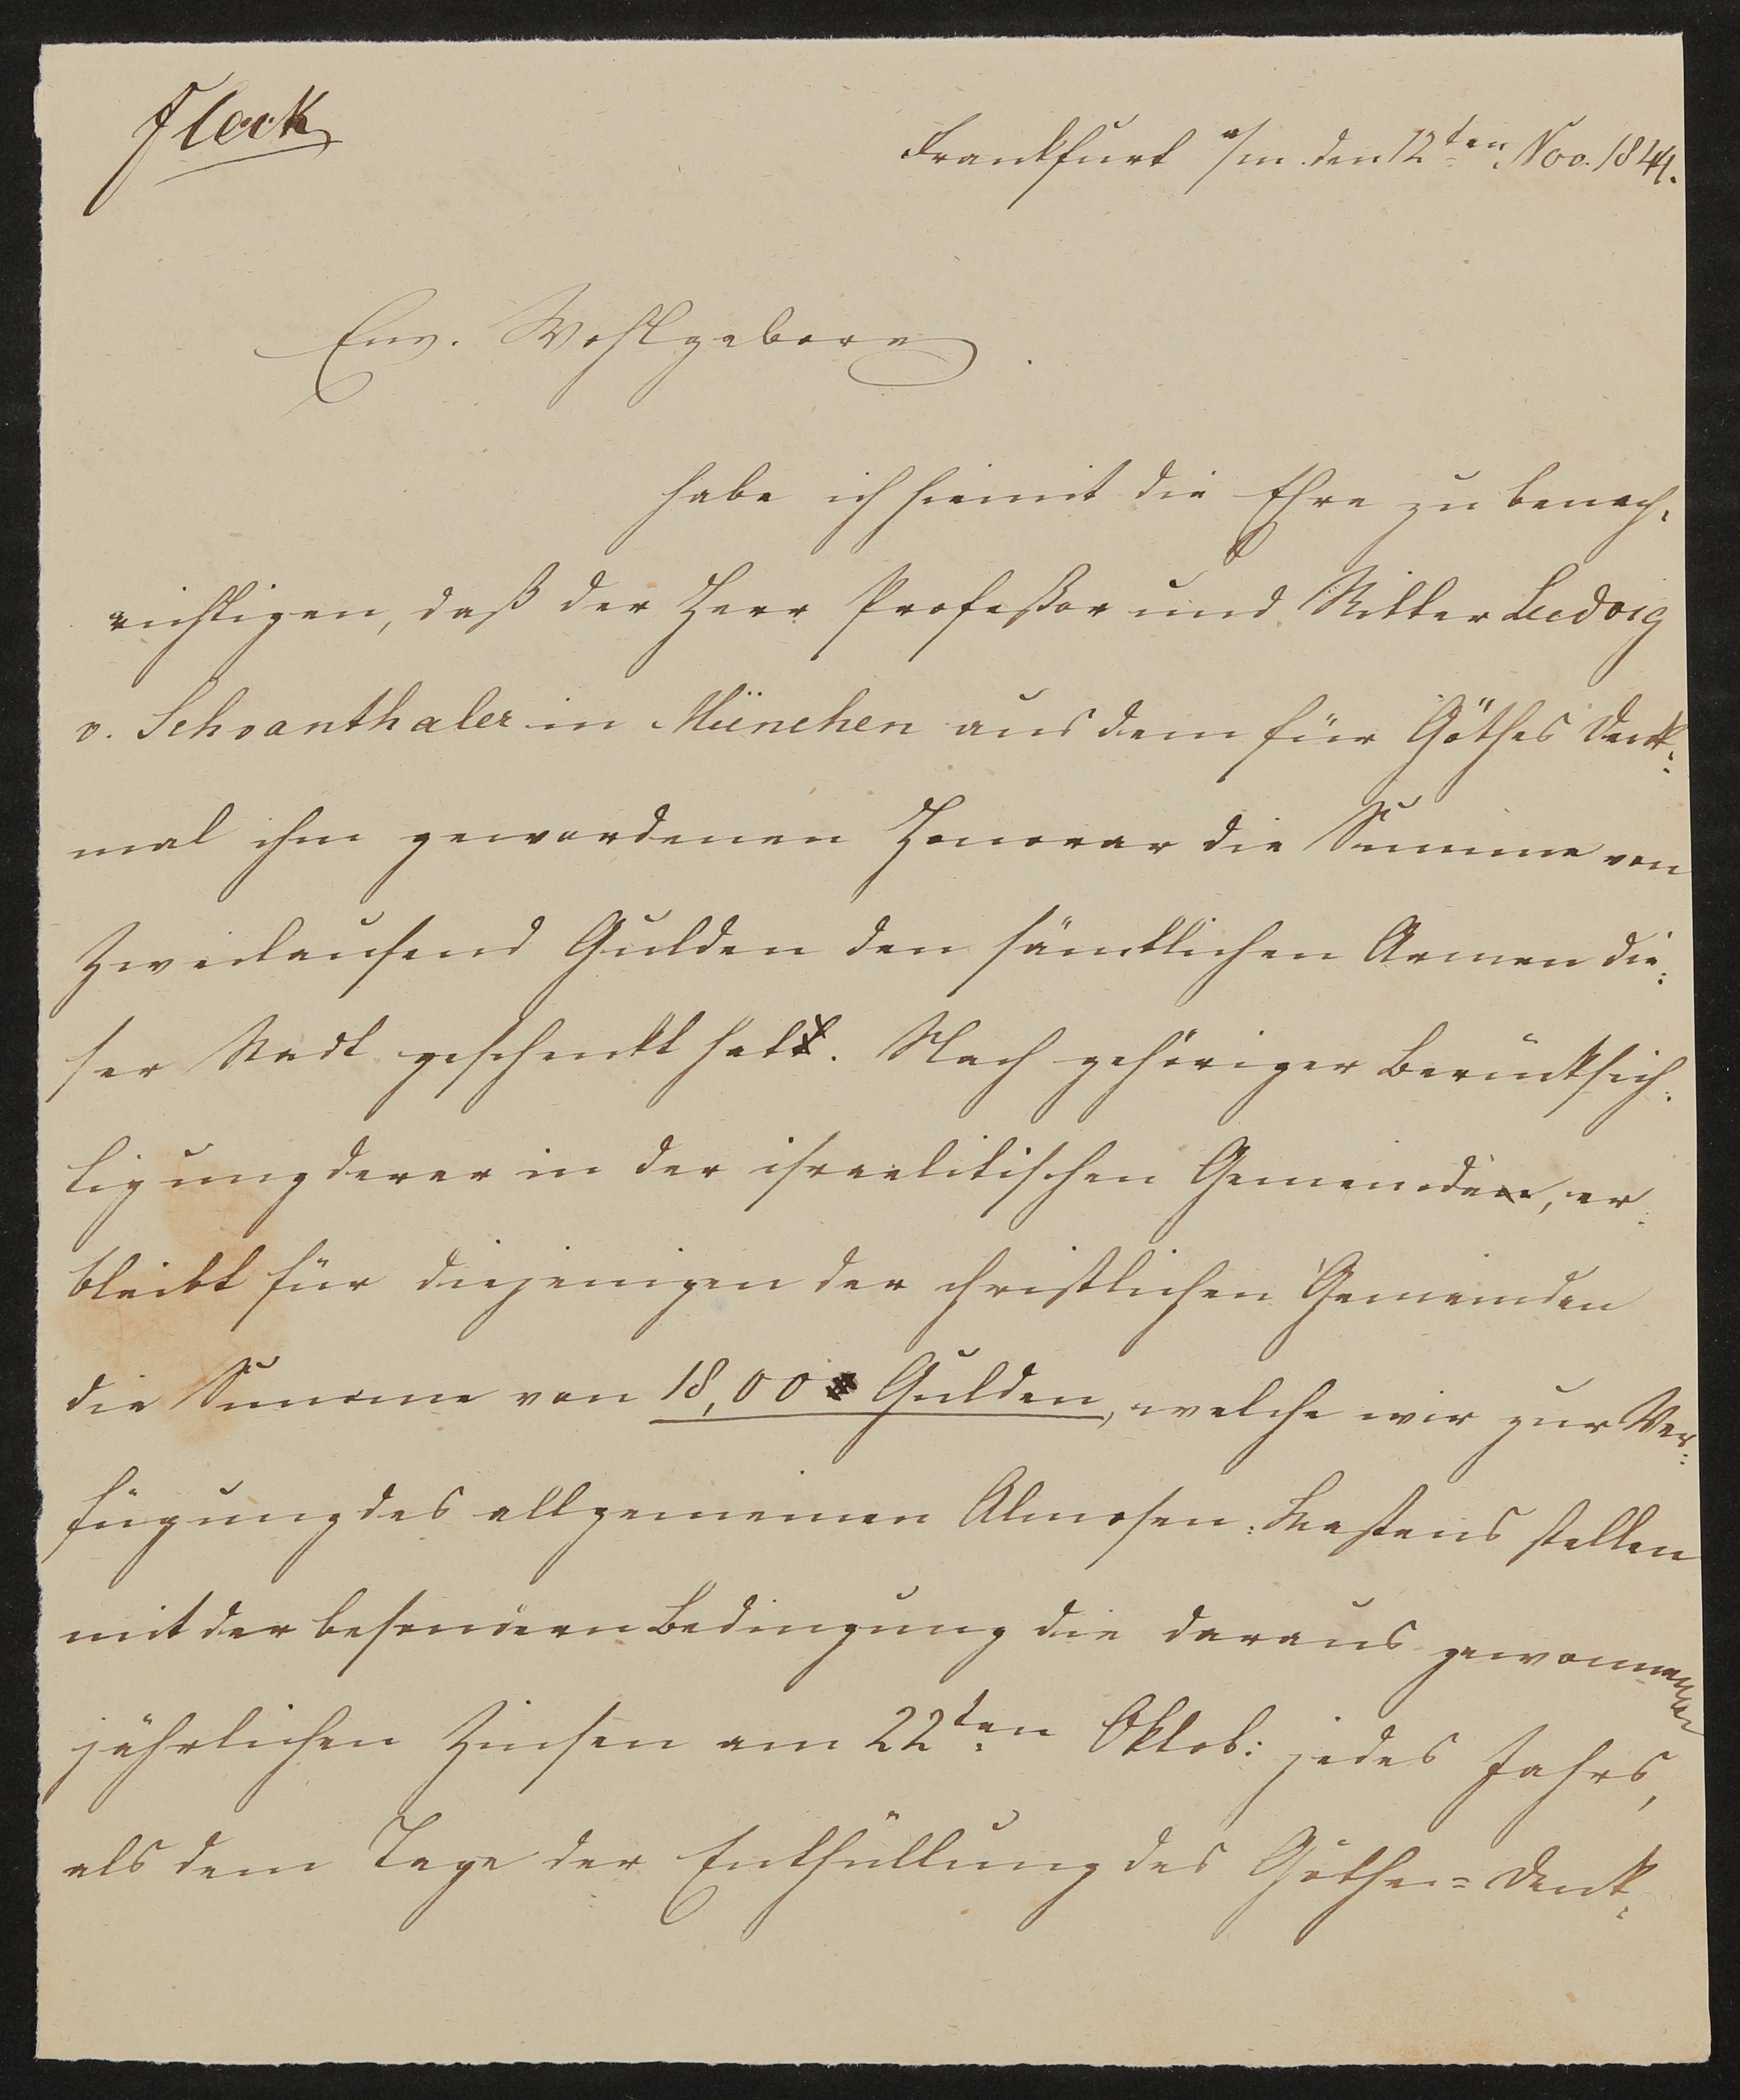 Brief von Friedrich John an Hermann Ludwig Jacob Leberecht Fleck vom 12.11.1844 (Freies Deutsches Hochstift / Frankfurter Goethe-Museum Public Domain Mark)